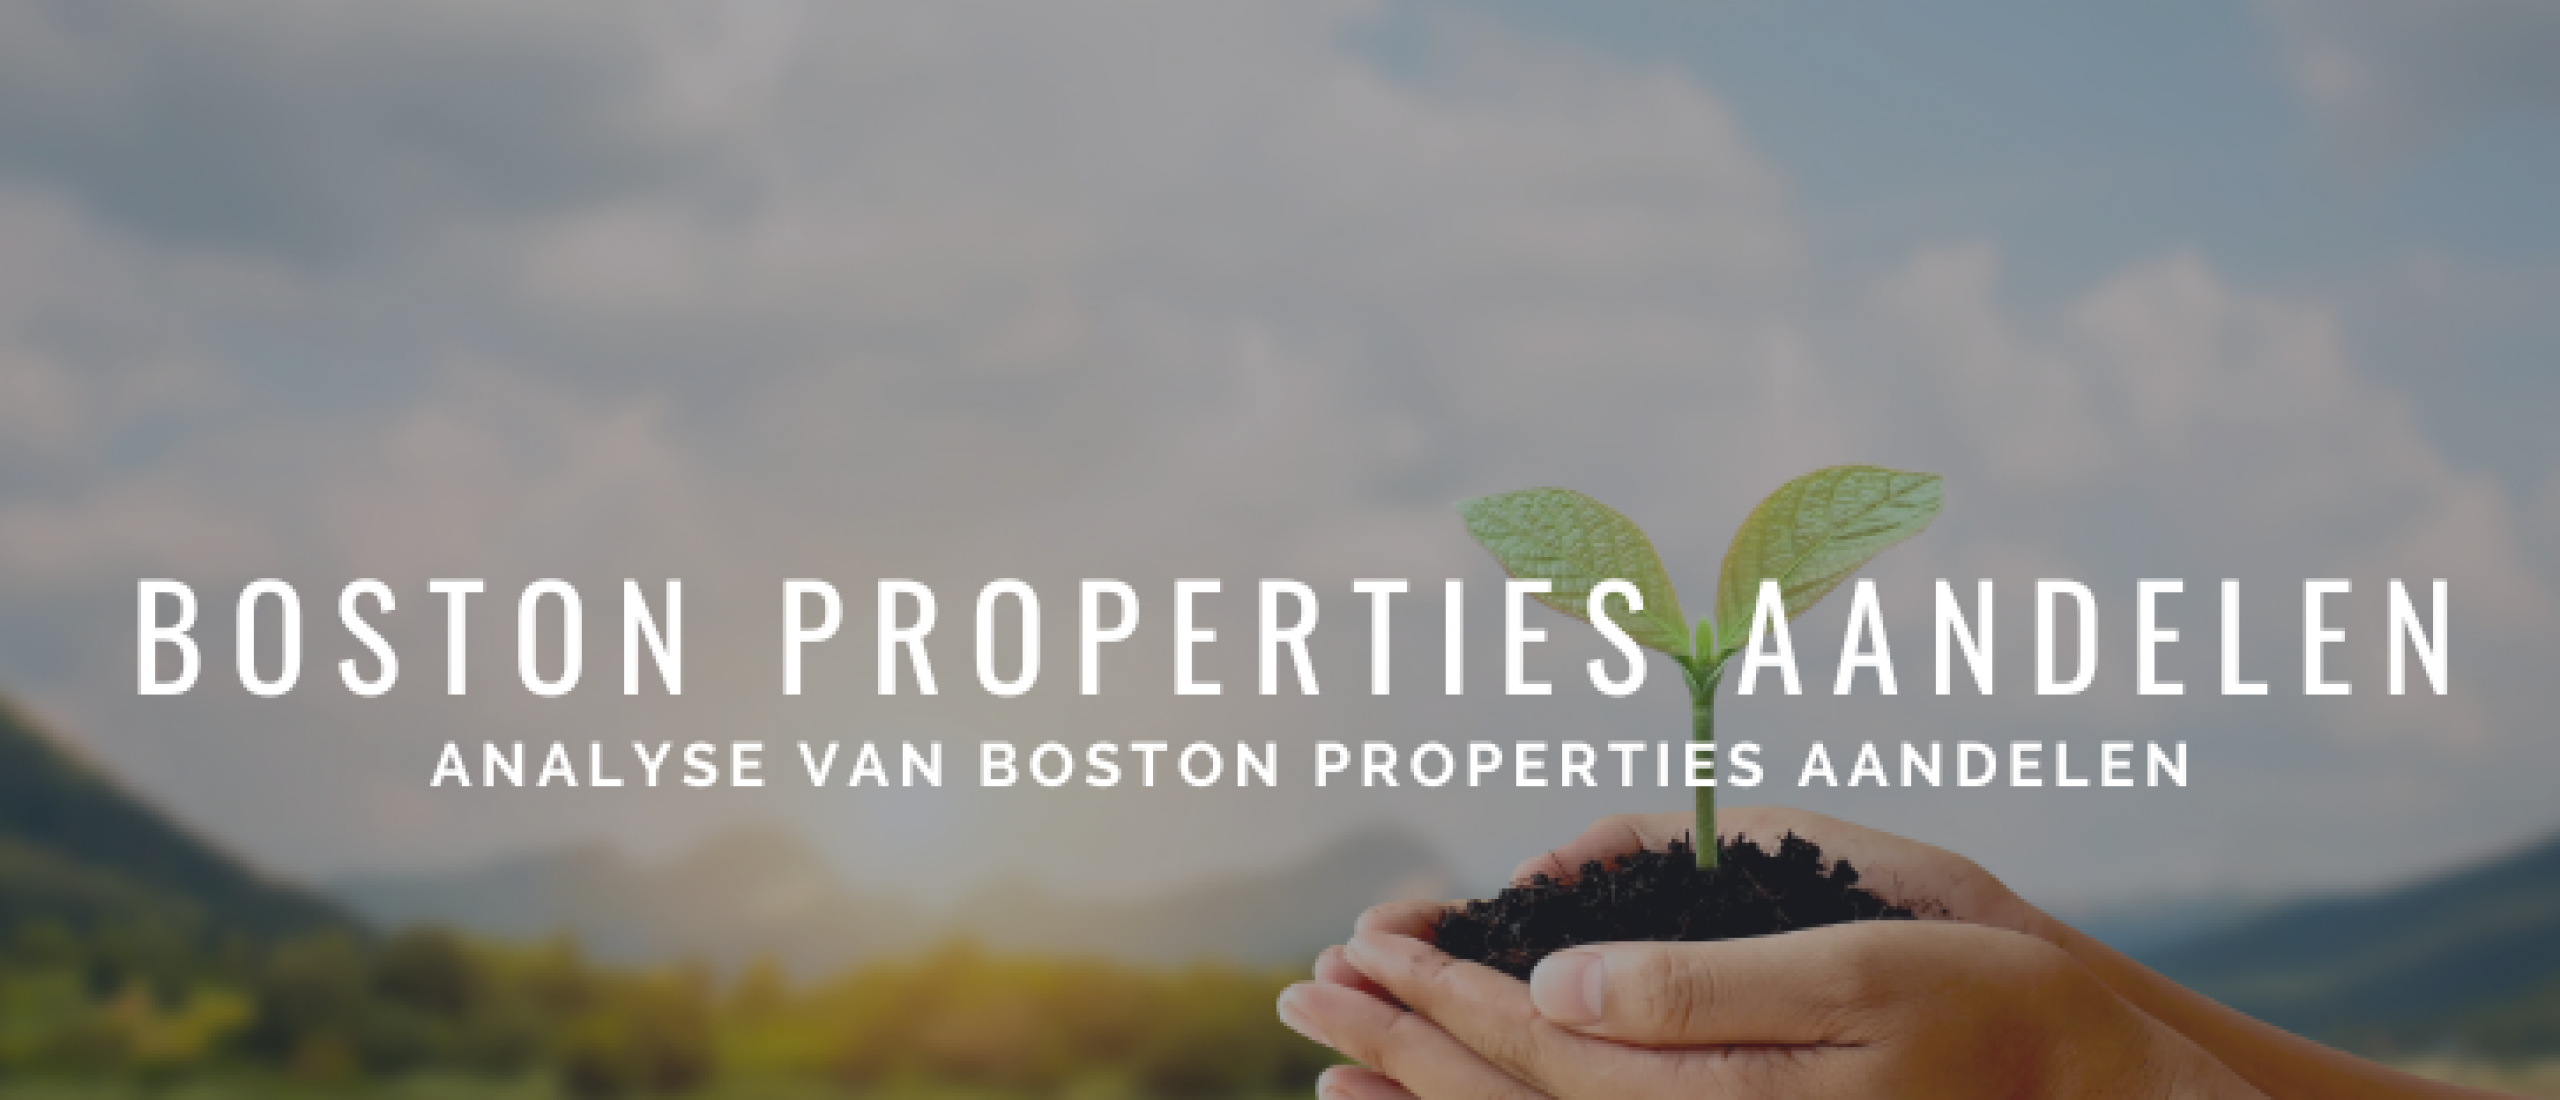 boston-properties-aandelen-